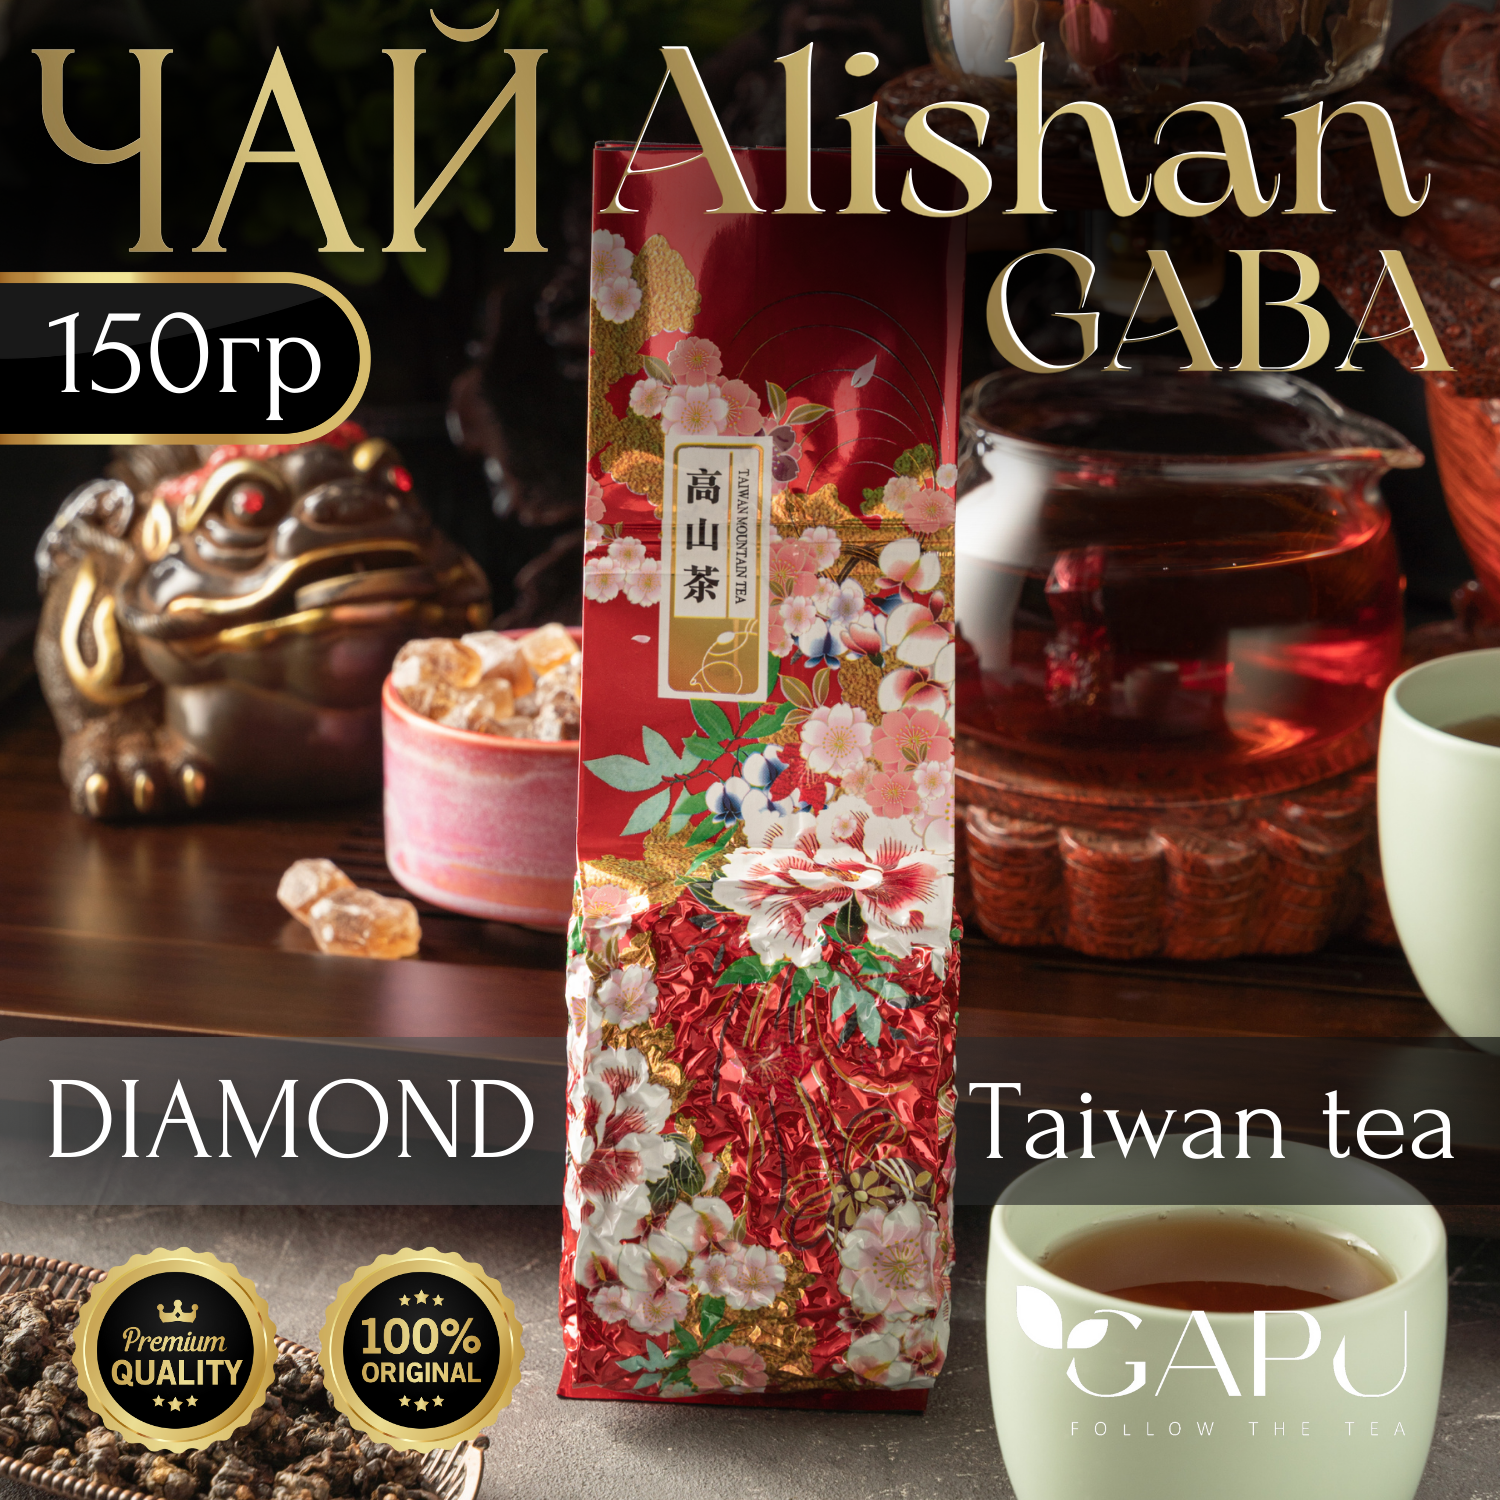 Чай GAPU Бриллиант Габа улун Алишань Diamond Gaba Oolong tea, 150 г